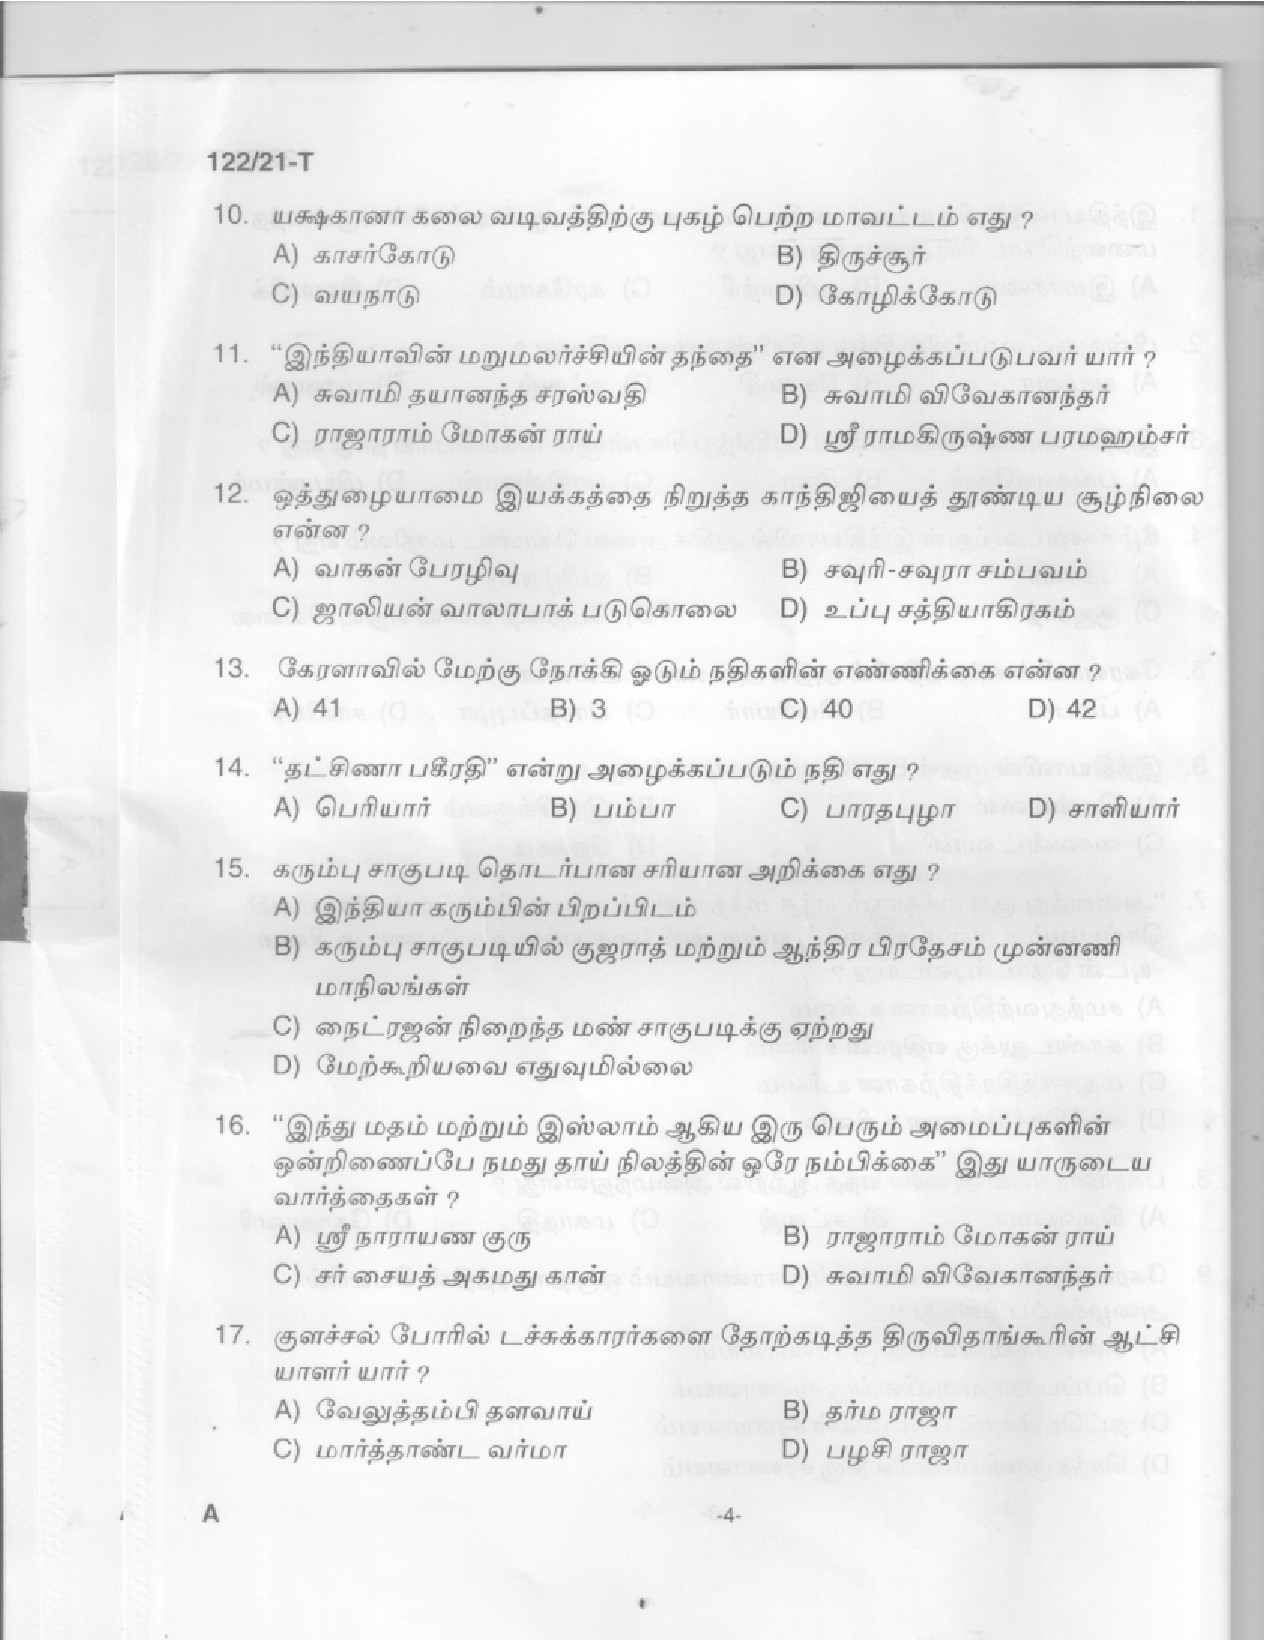 KPSC Upto SSLC Level Main Examination LGS Tamil Exam 2021 Code 1222021 T 2